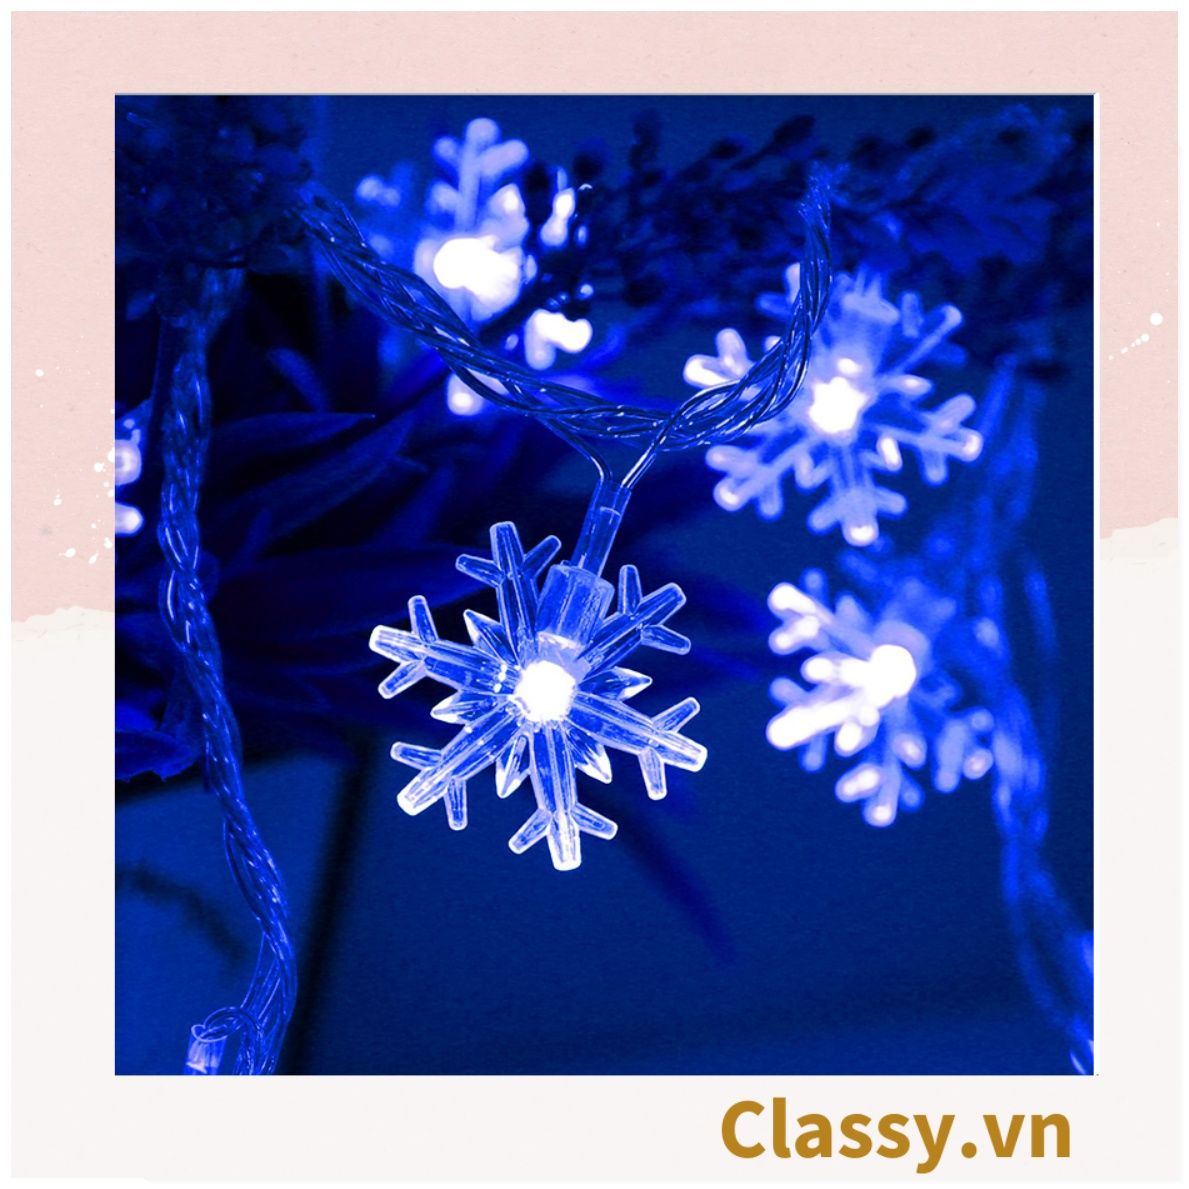  Đèn LED 20 bóng, dài 3 Mét hình Bông Tuyết trang trí phòng ngủ, tiệc tùng, đi cắm trại với ánh sáng lung linh ấm áp hộp pin USB dây đèn Giáng sinh Q417 